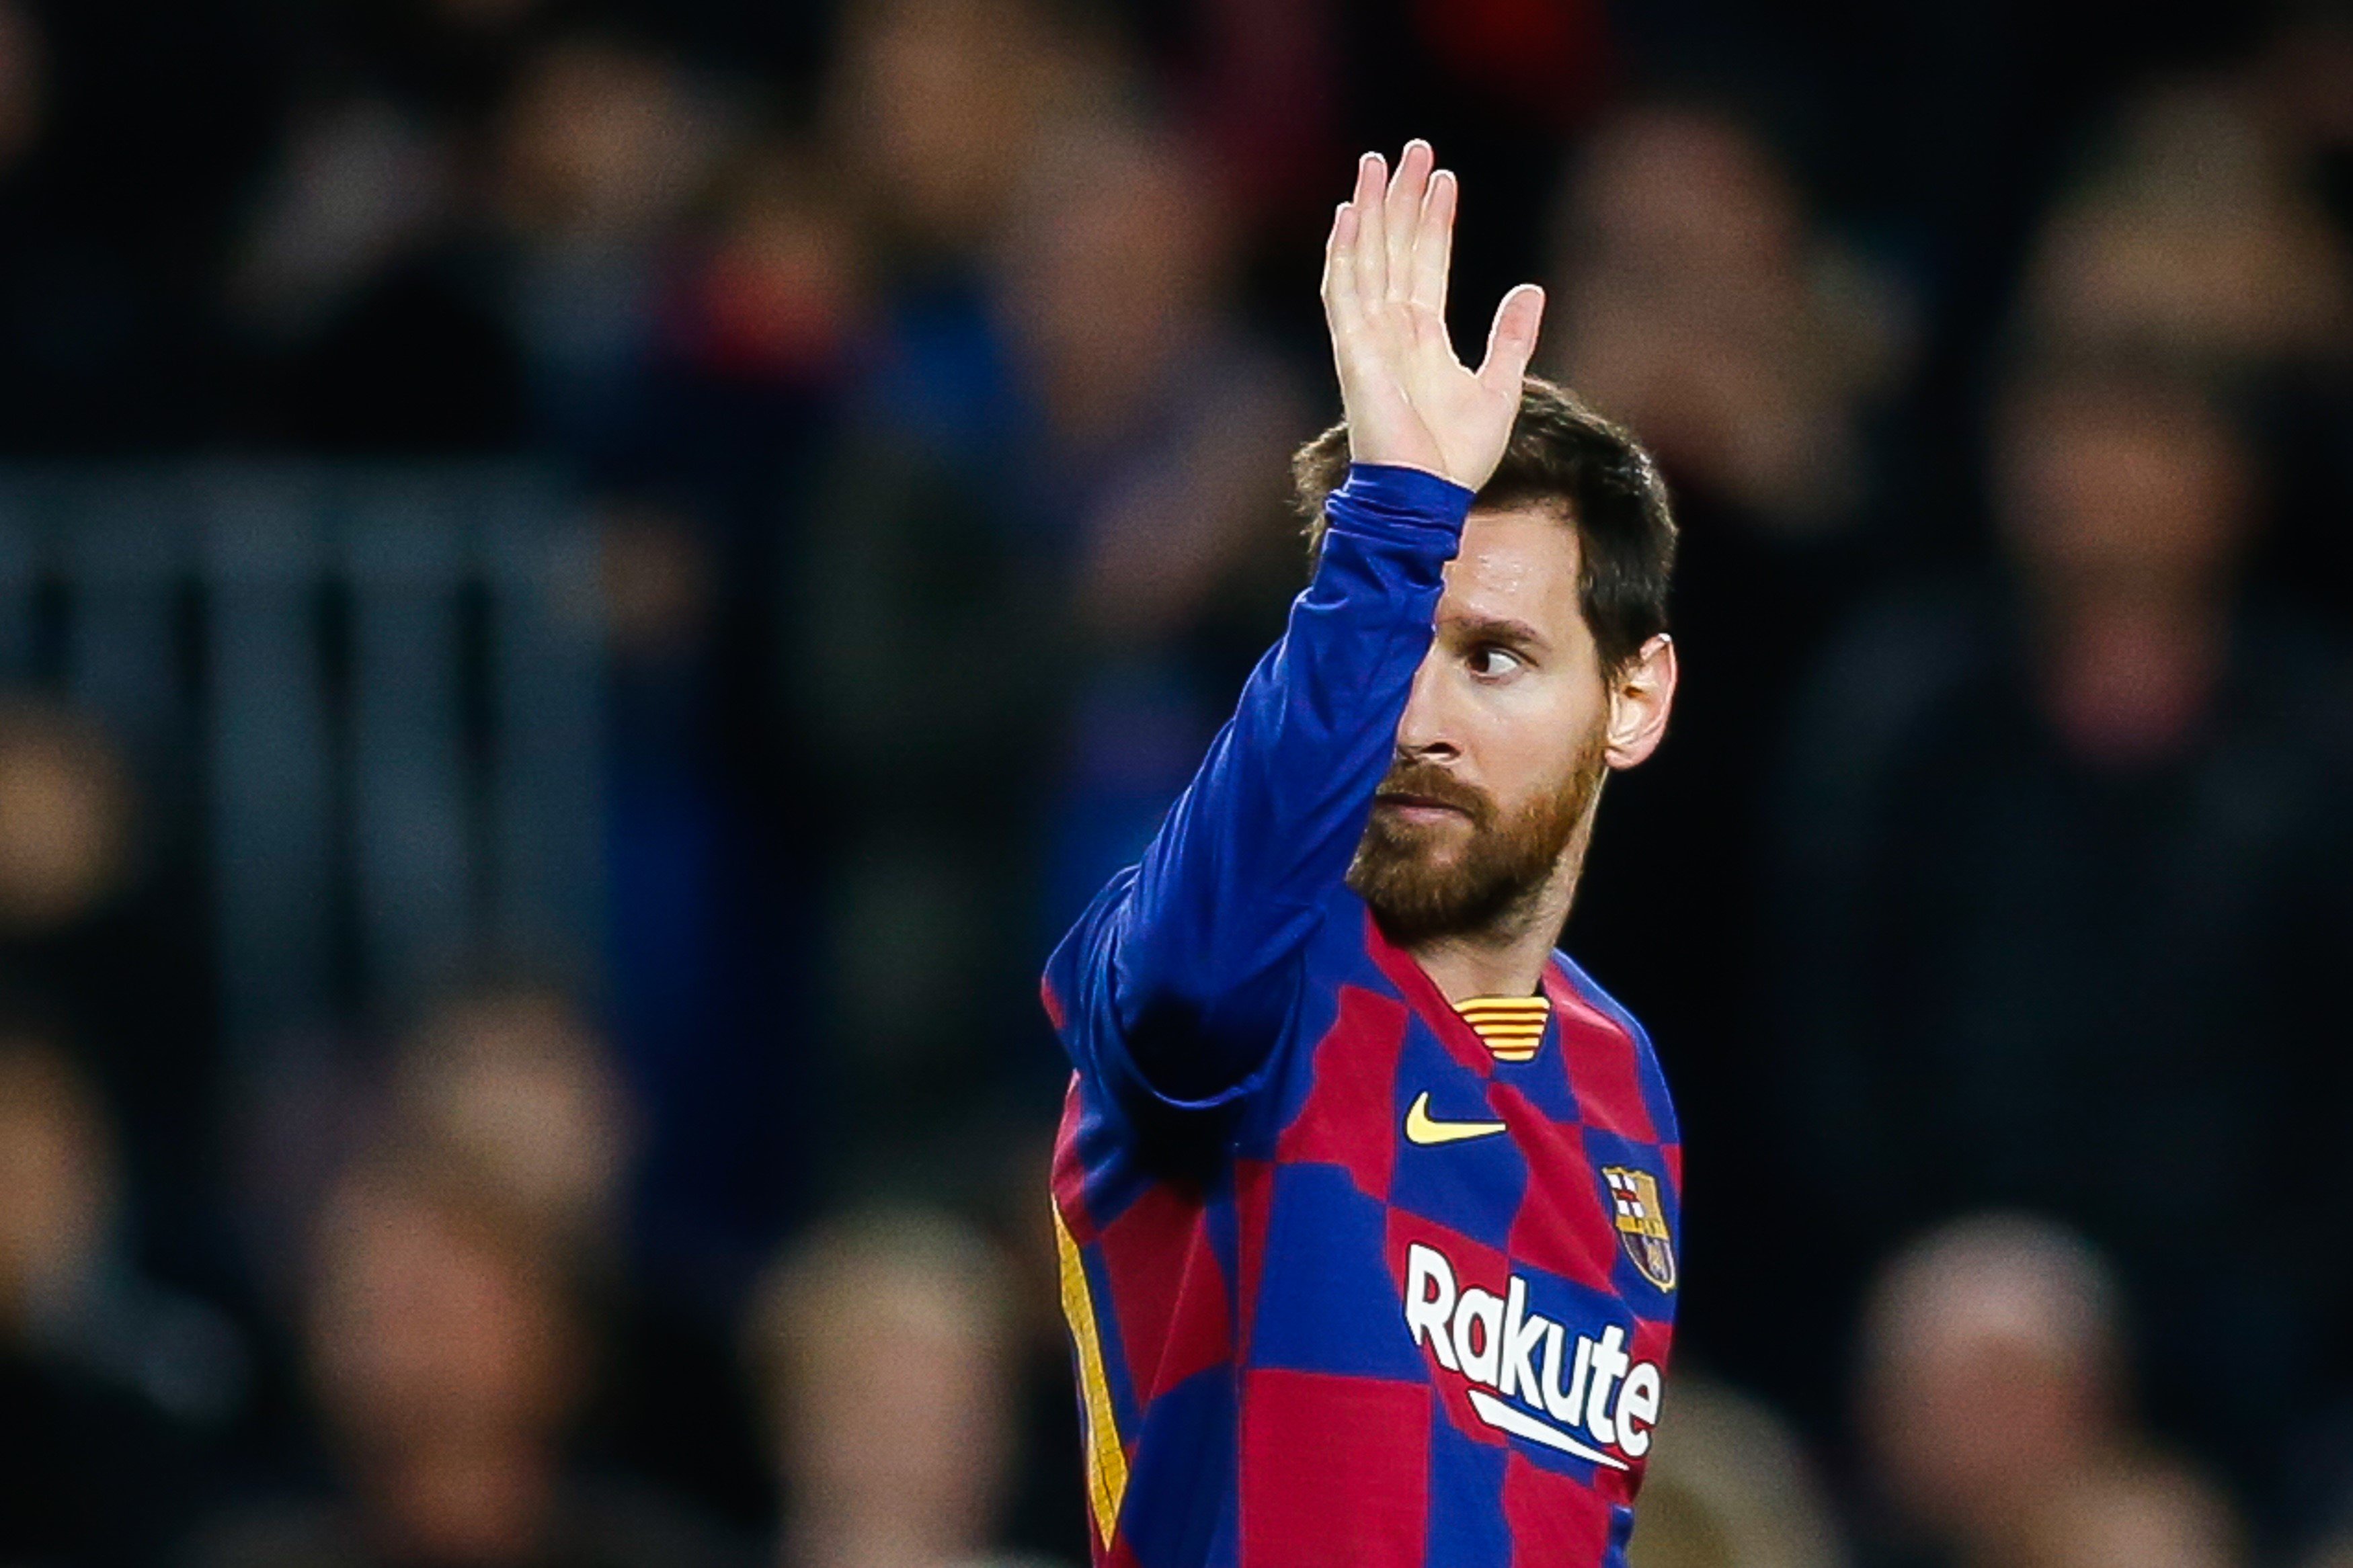 El futur de Messi: quins clubs el podrien fitxar?